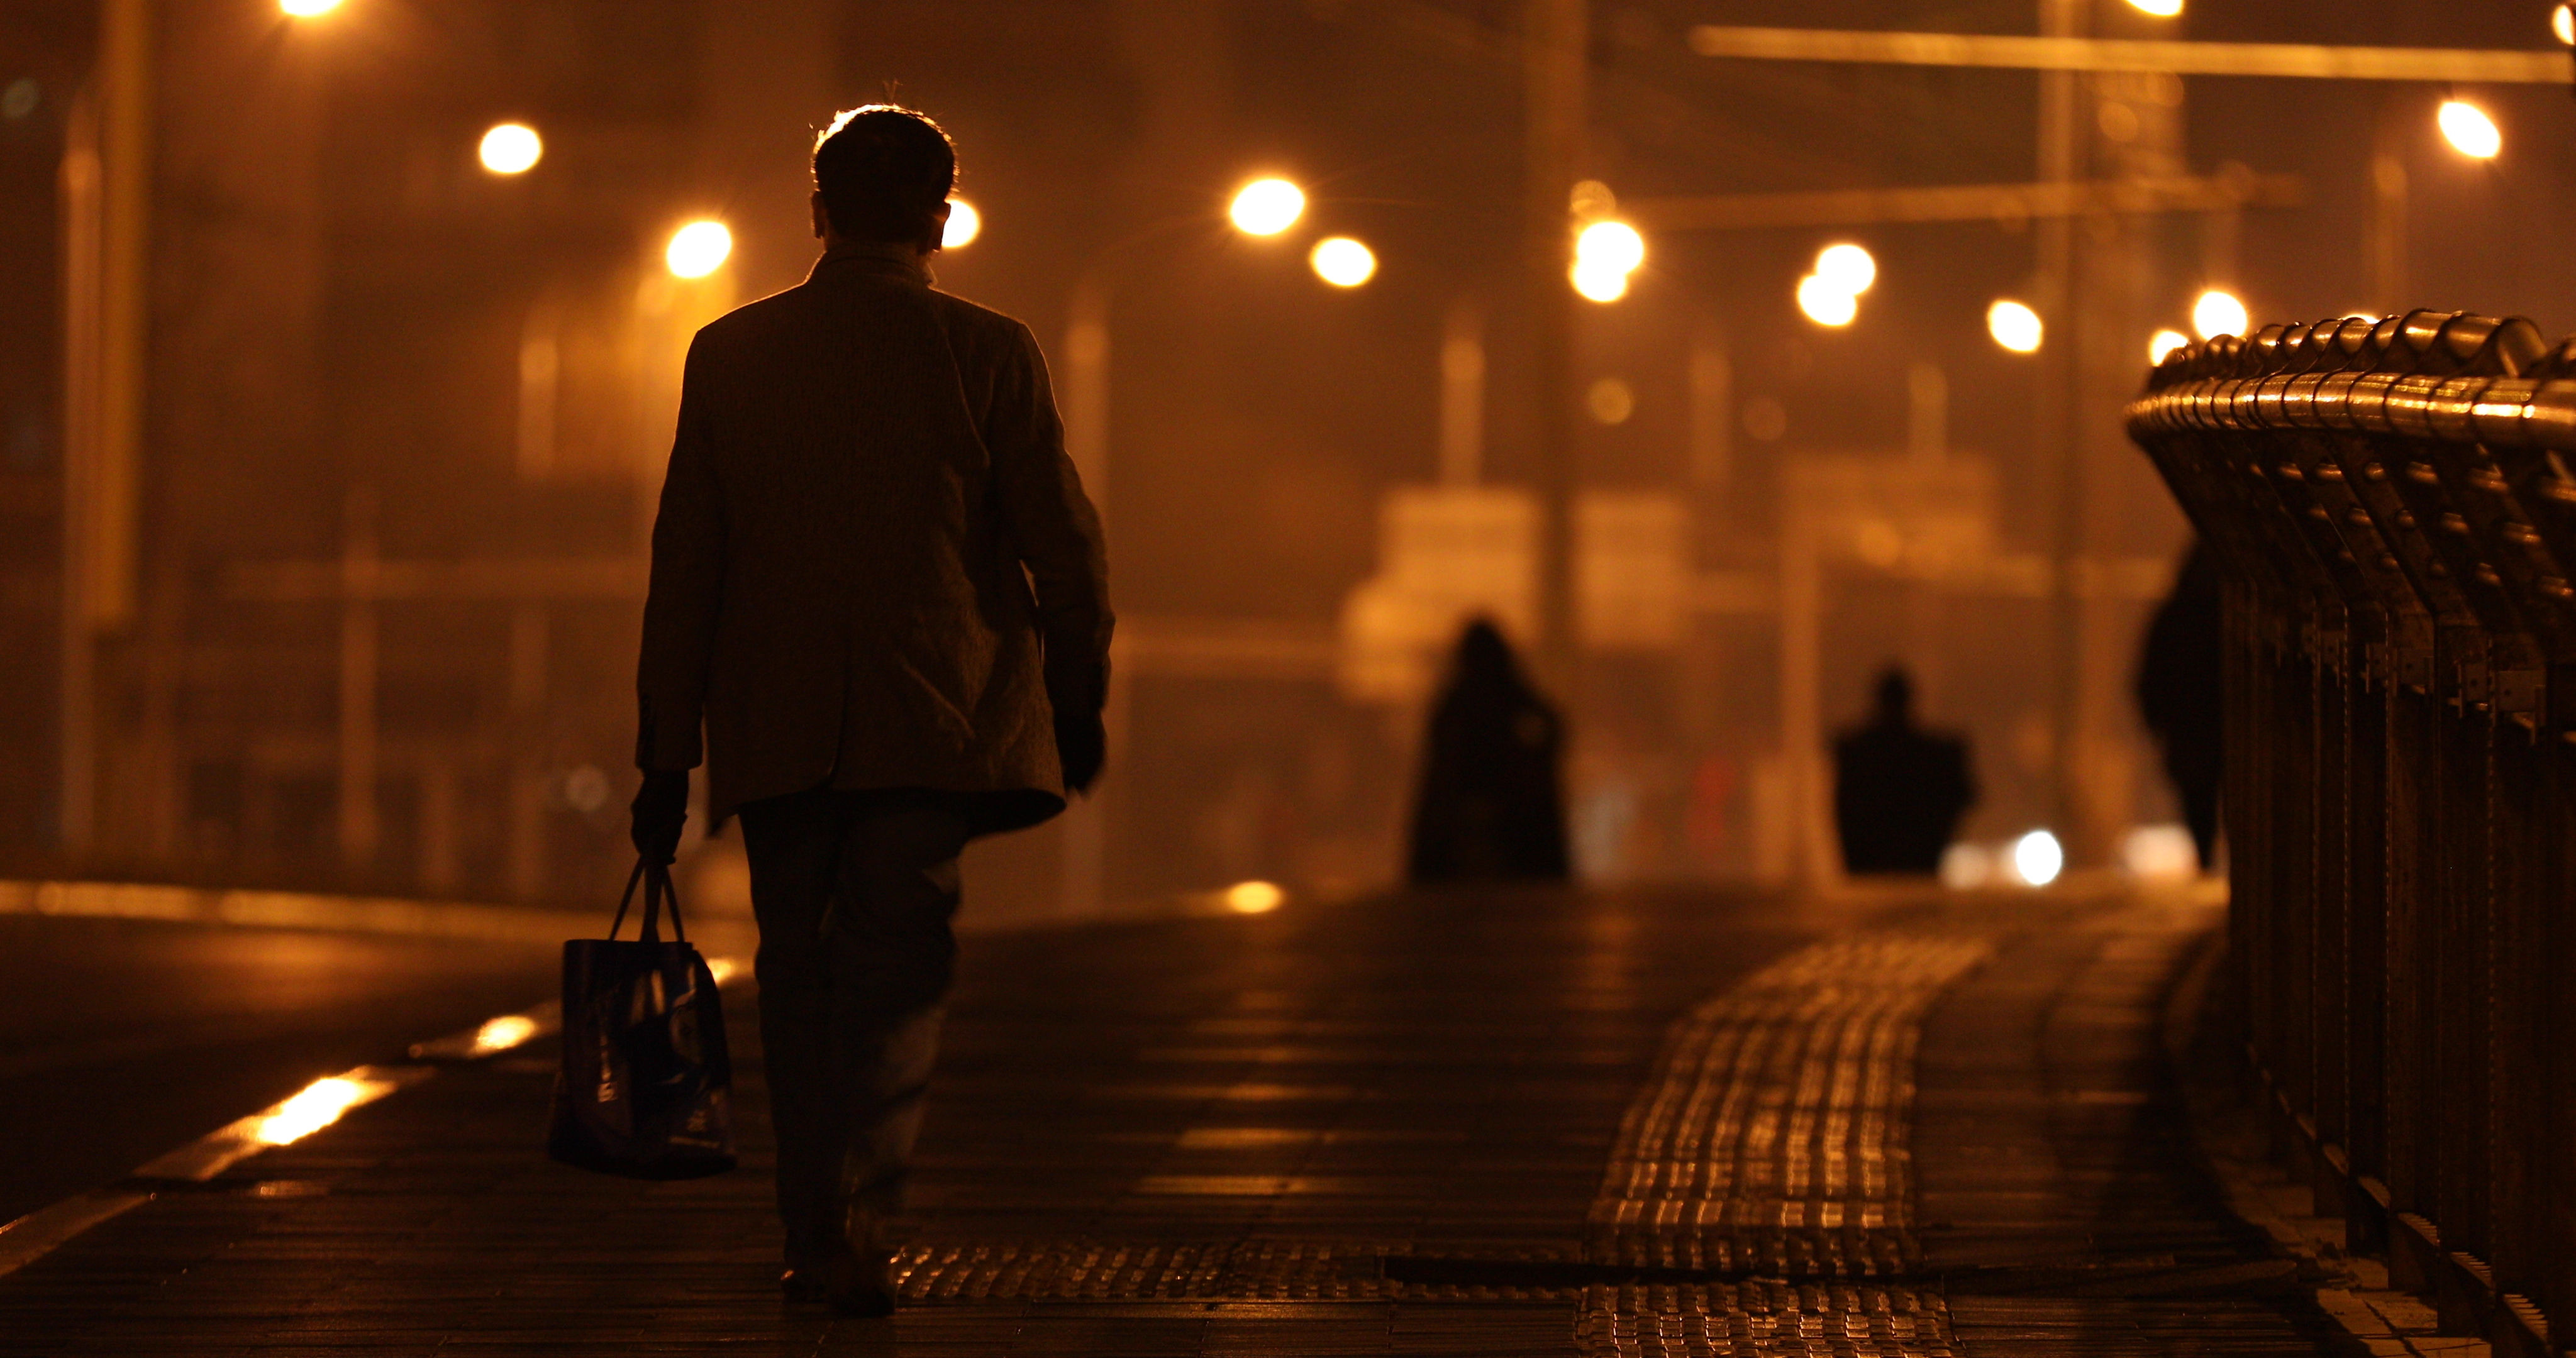 伤感城市夜晚深夜一个人走路回家劳累背影生活压力人物夜间街道街景